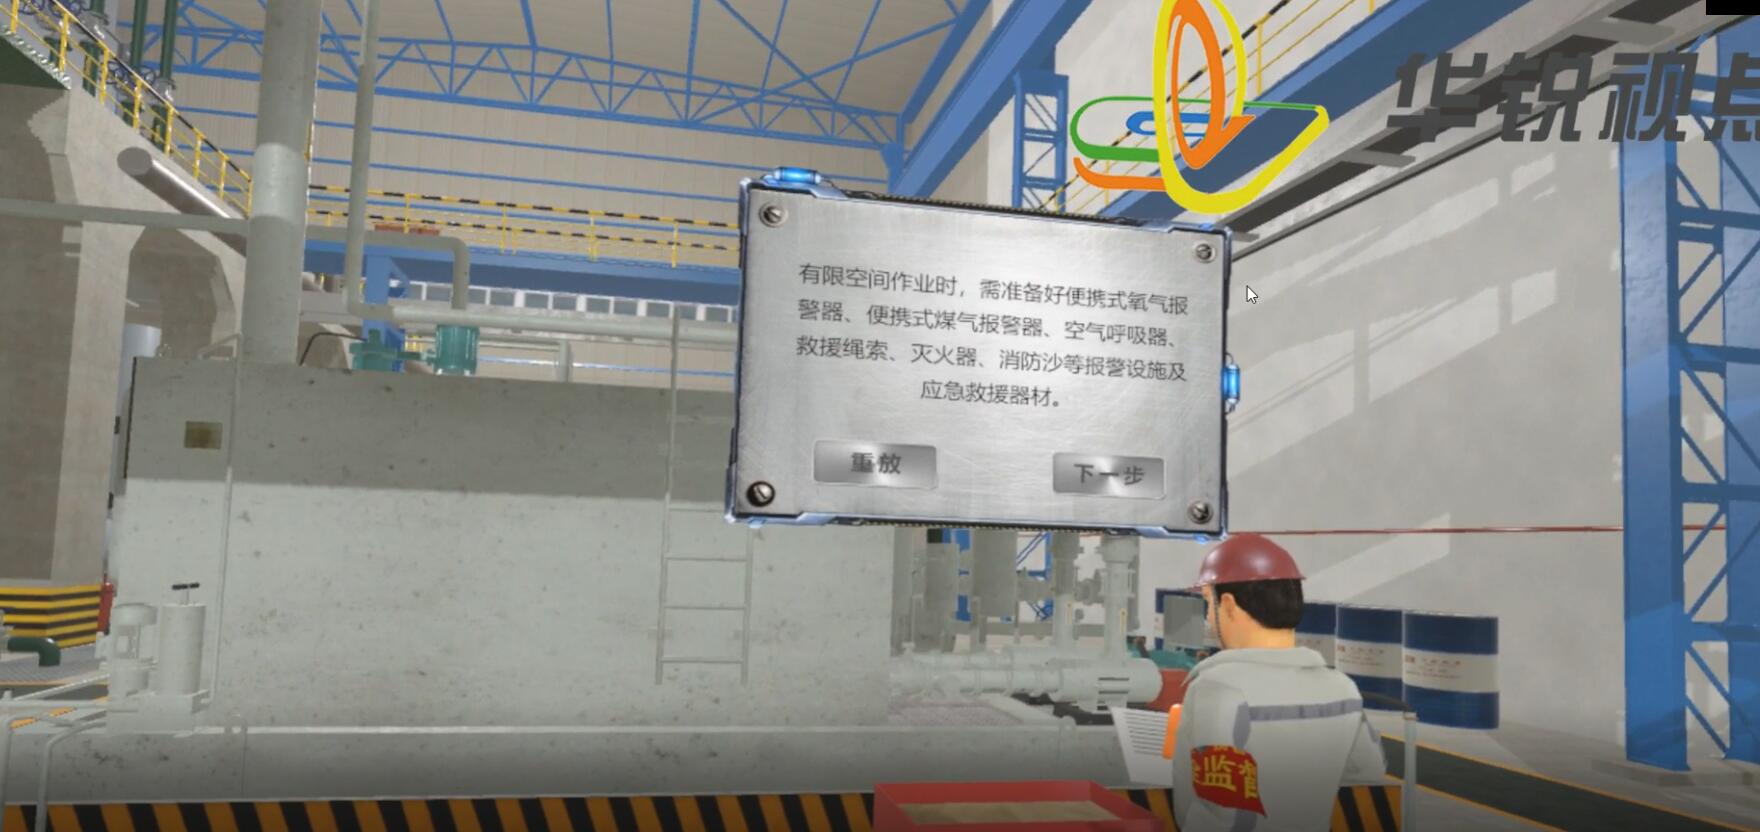 钢铁冶金常见事故米乐m6
模拟体验安全培训系统